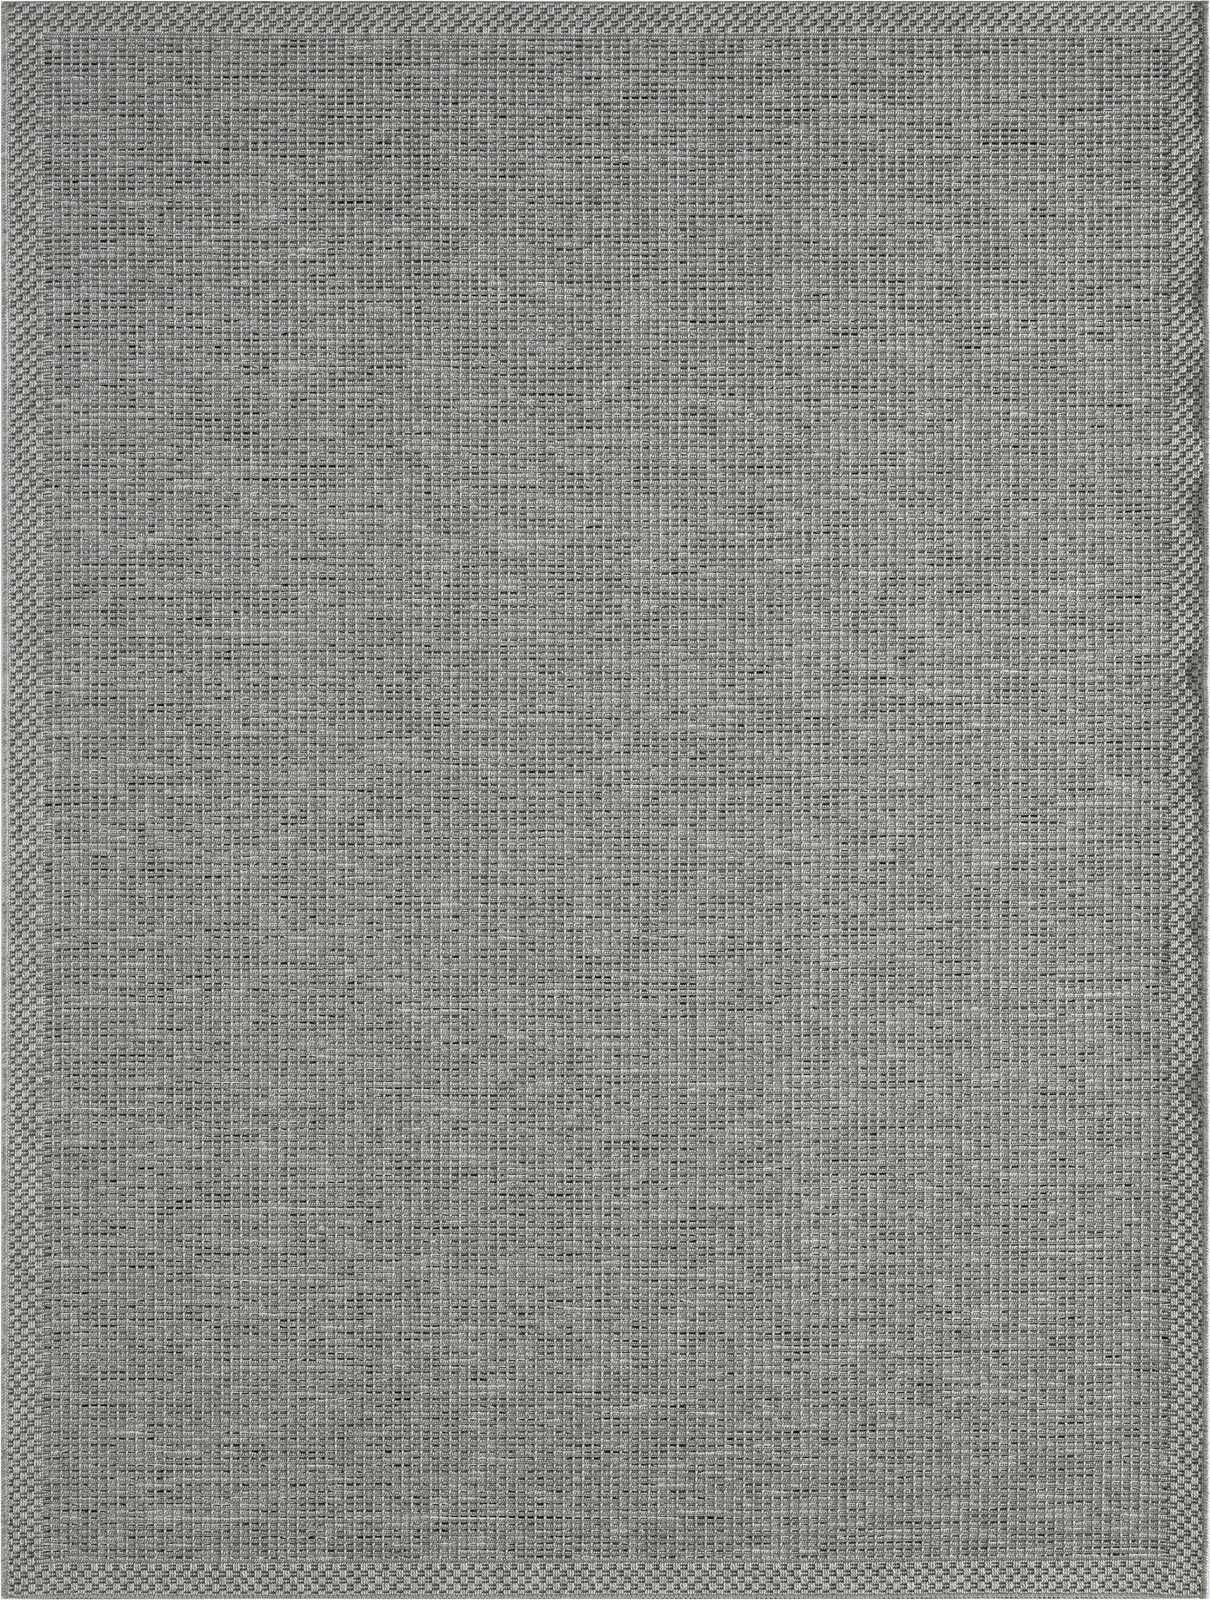             Tapis d'extérieur simple en gris - 200 x 140 cm
        